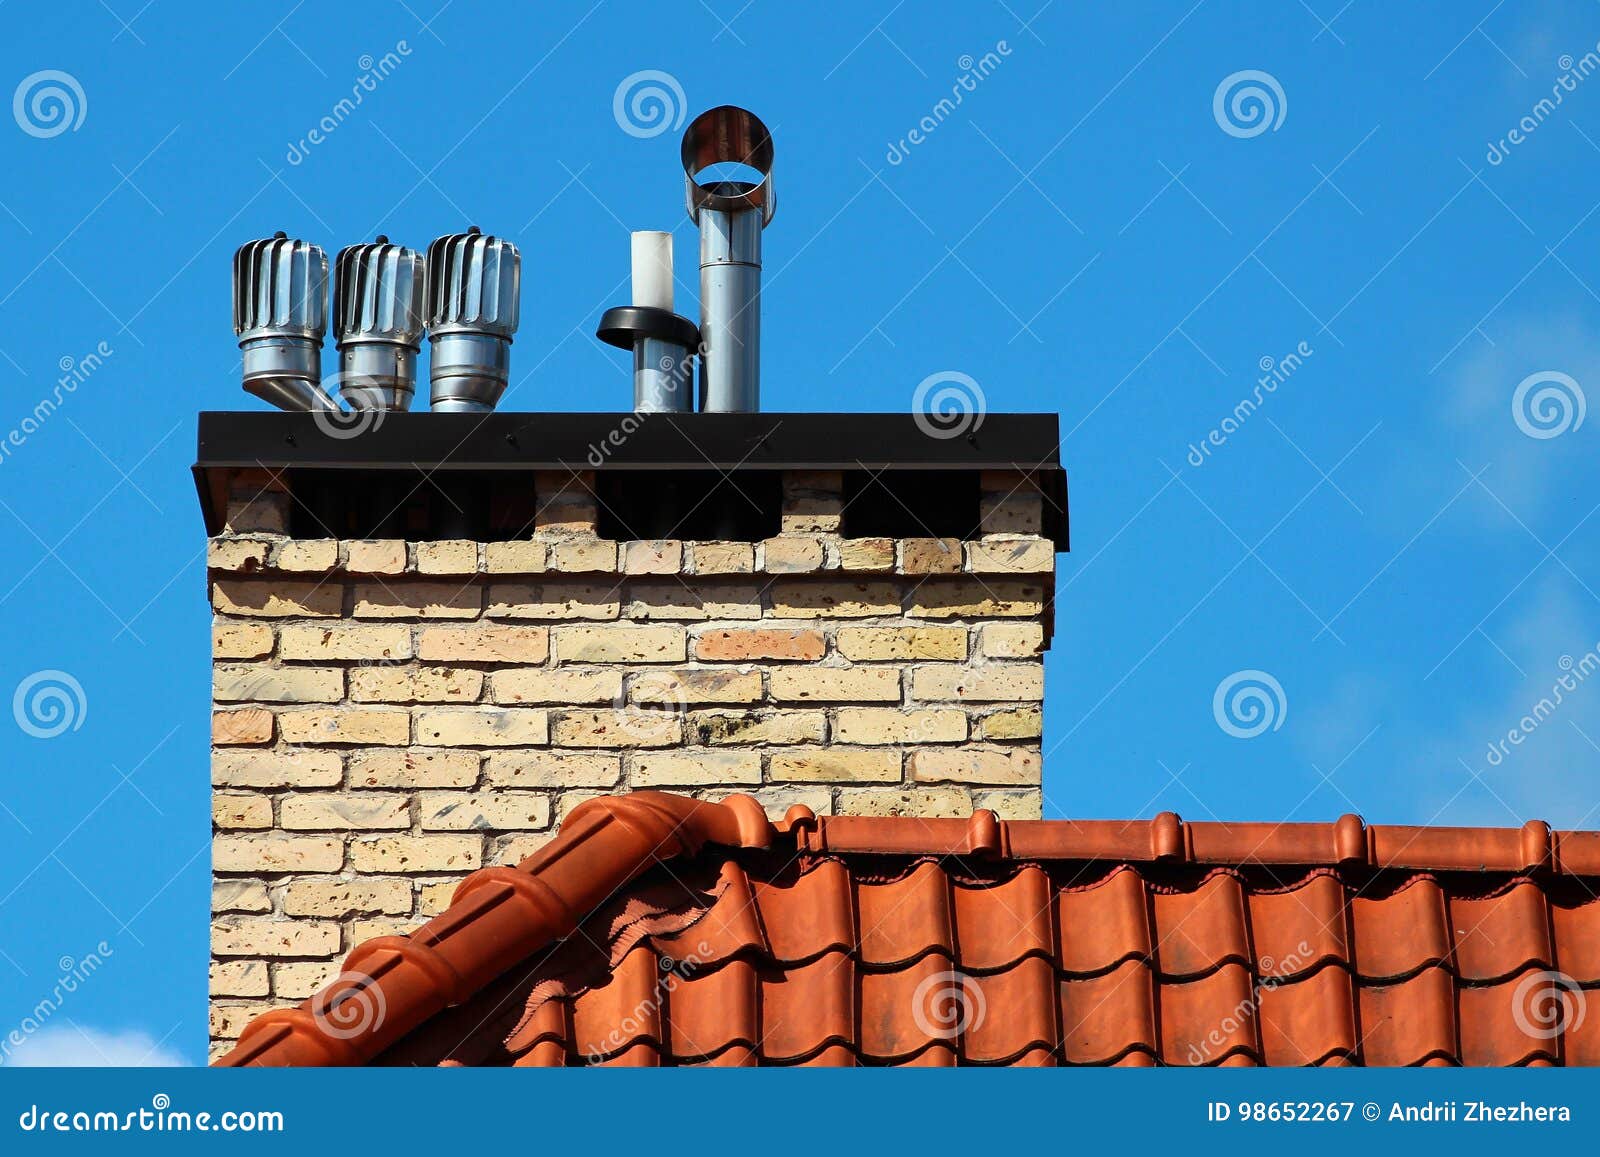 revolving cowls eradicate downdraught in chimneys